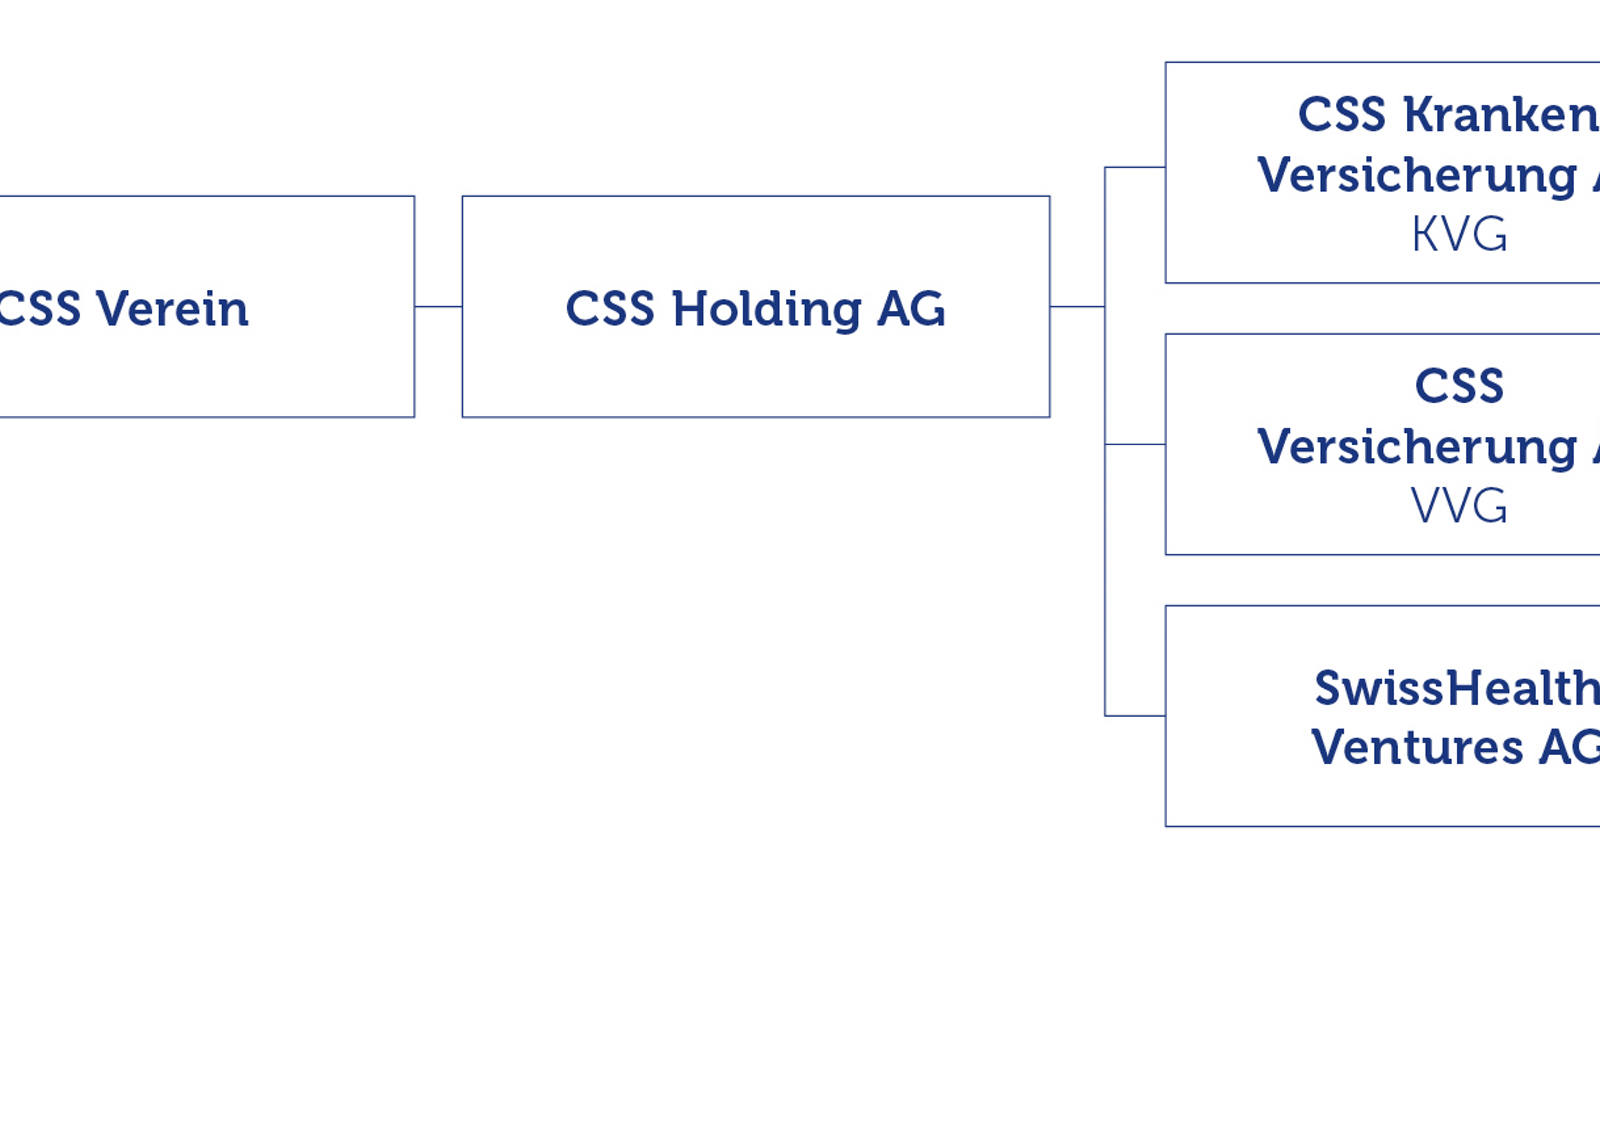 Organigramm der CSS Gruppe